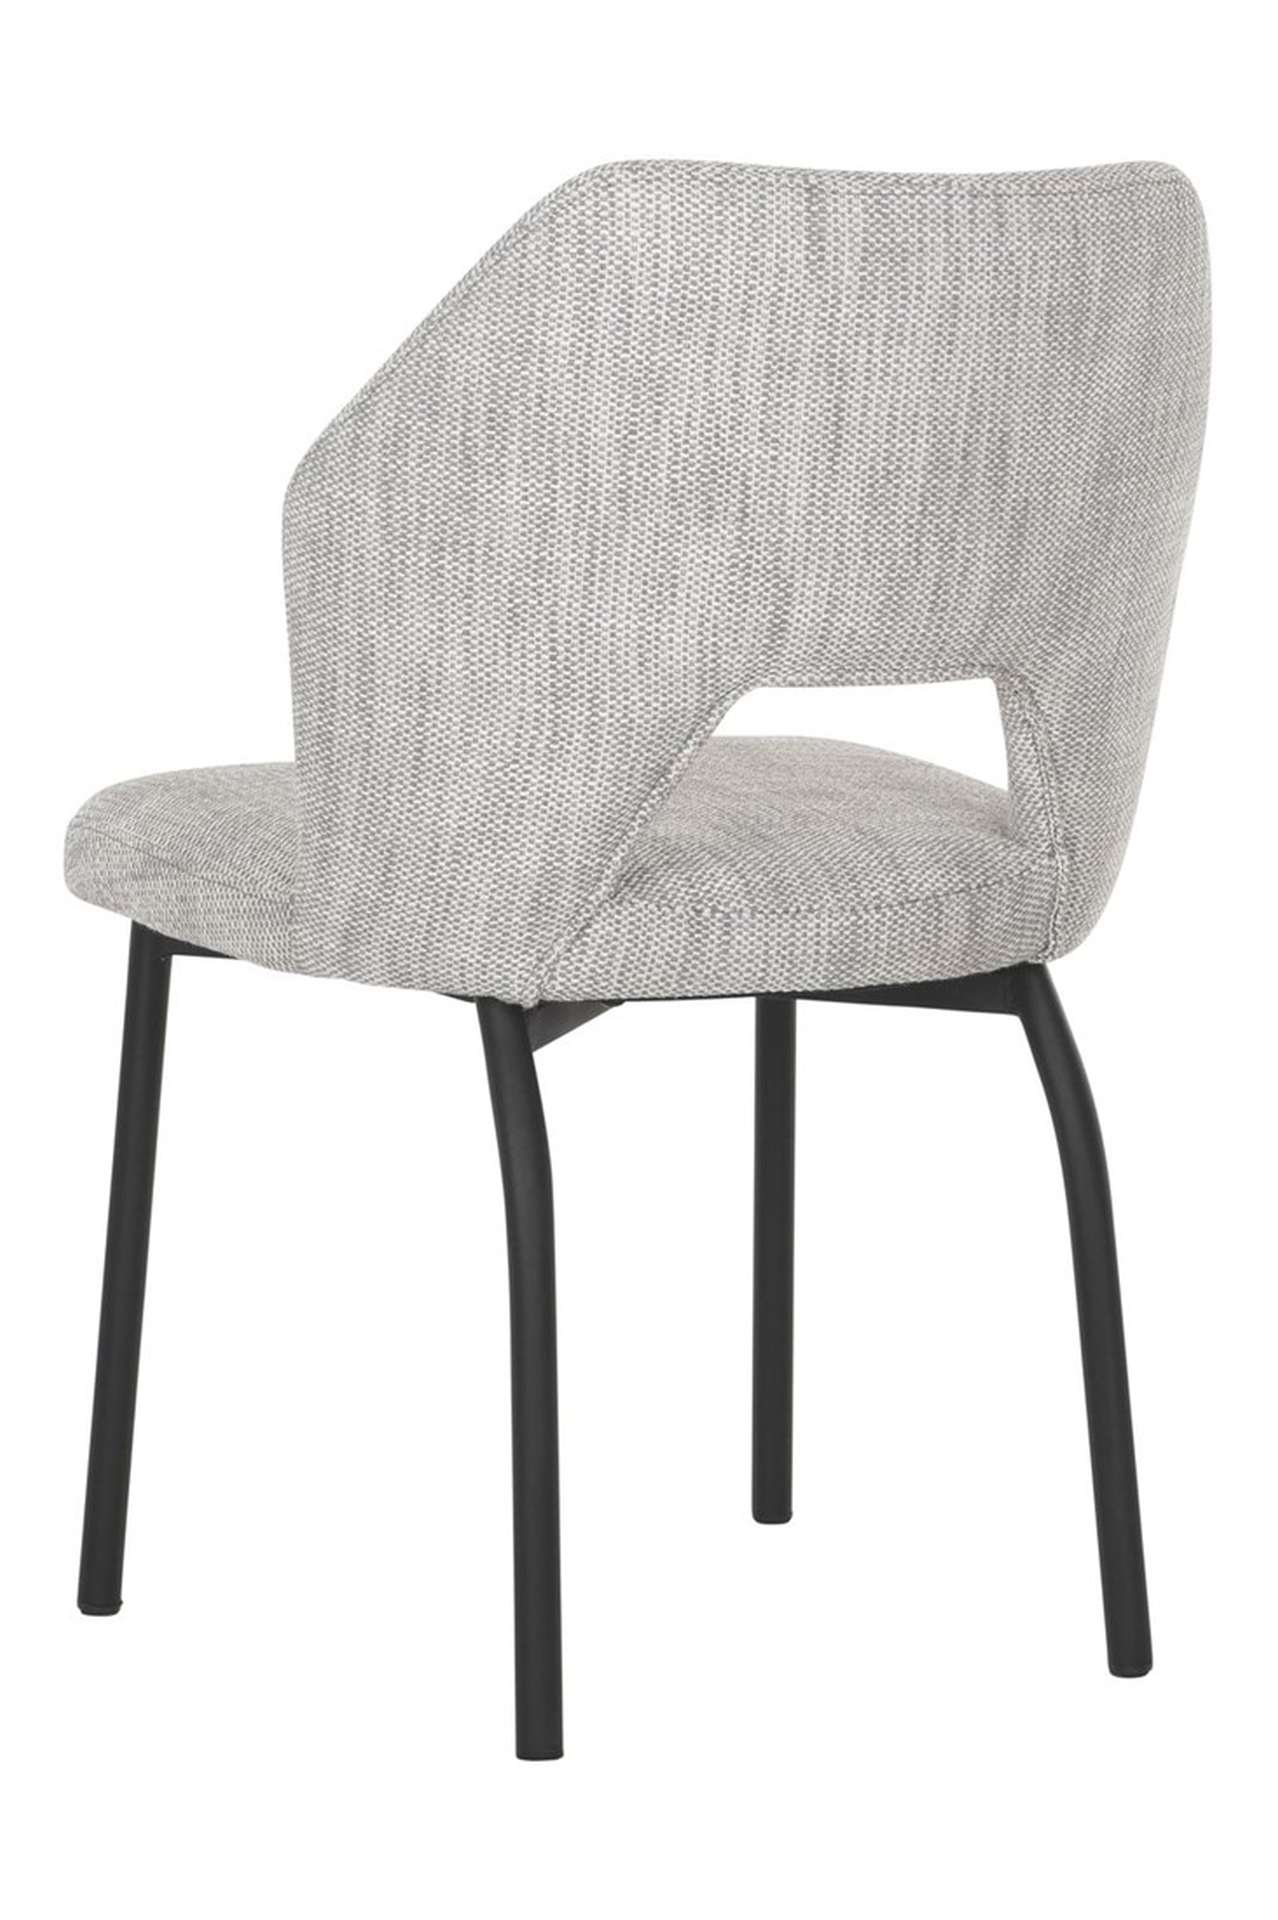 Der Esszimmerstuhl Bloom überzeugt mit seinem modernem aber auch schlichtem Design. Gefertigt wurde der Stuhl aus einem Polaris Stoff, welcher einen hellgrauen Farbton besitzt. Das Gestell ist aus Metall und ist Schwarz.